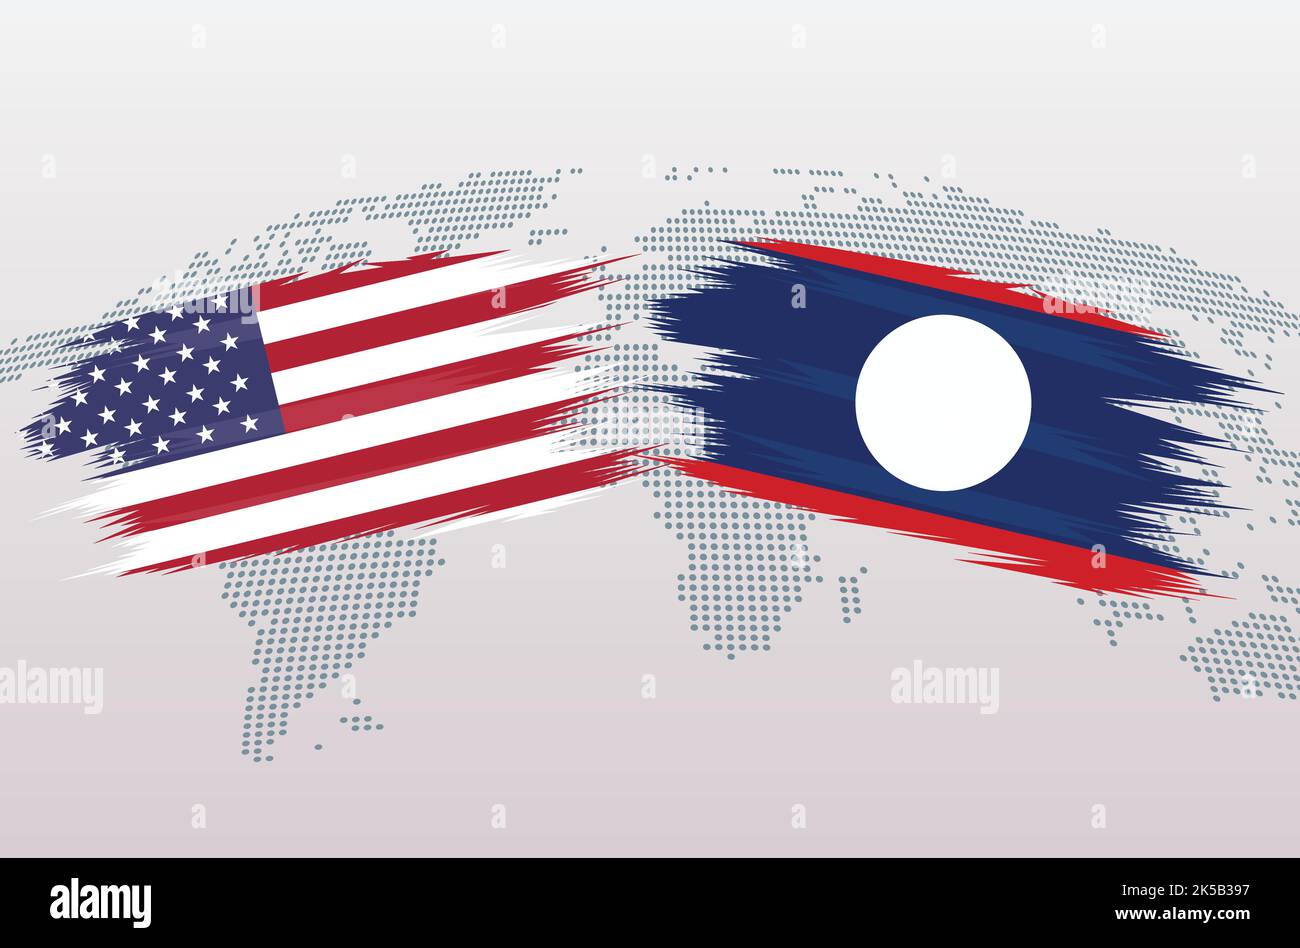 USA GEGEN LAOS FLAGGEN. Die Flaggen der Vereinigten Staaten von Amerika gegen LAOS, isoliert auf grauem Hintergrund der Weltkarte. Vektorgrafik. Stock Vektor